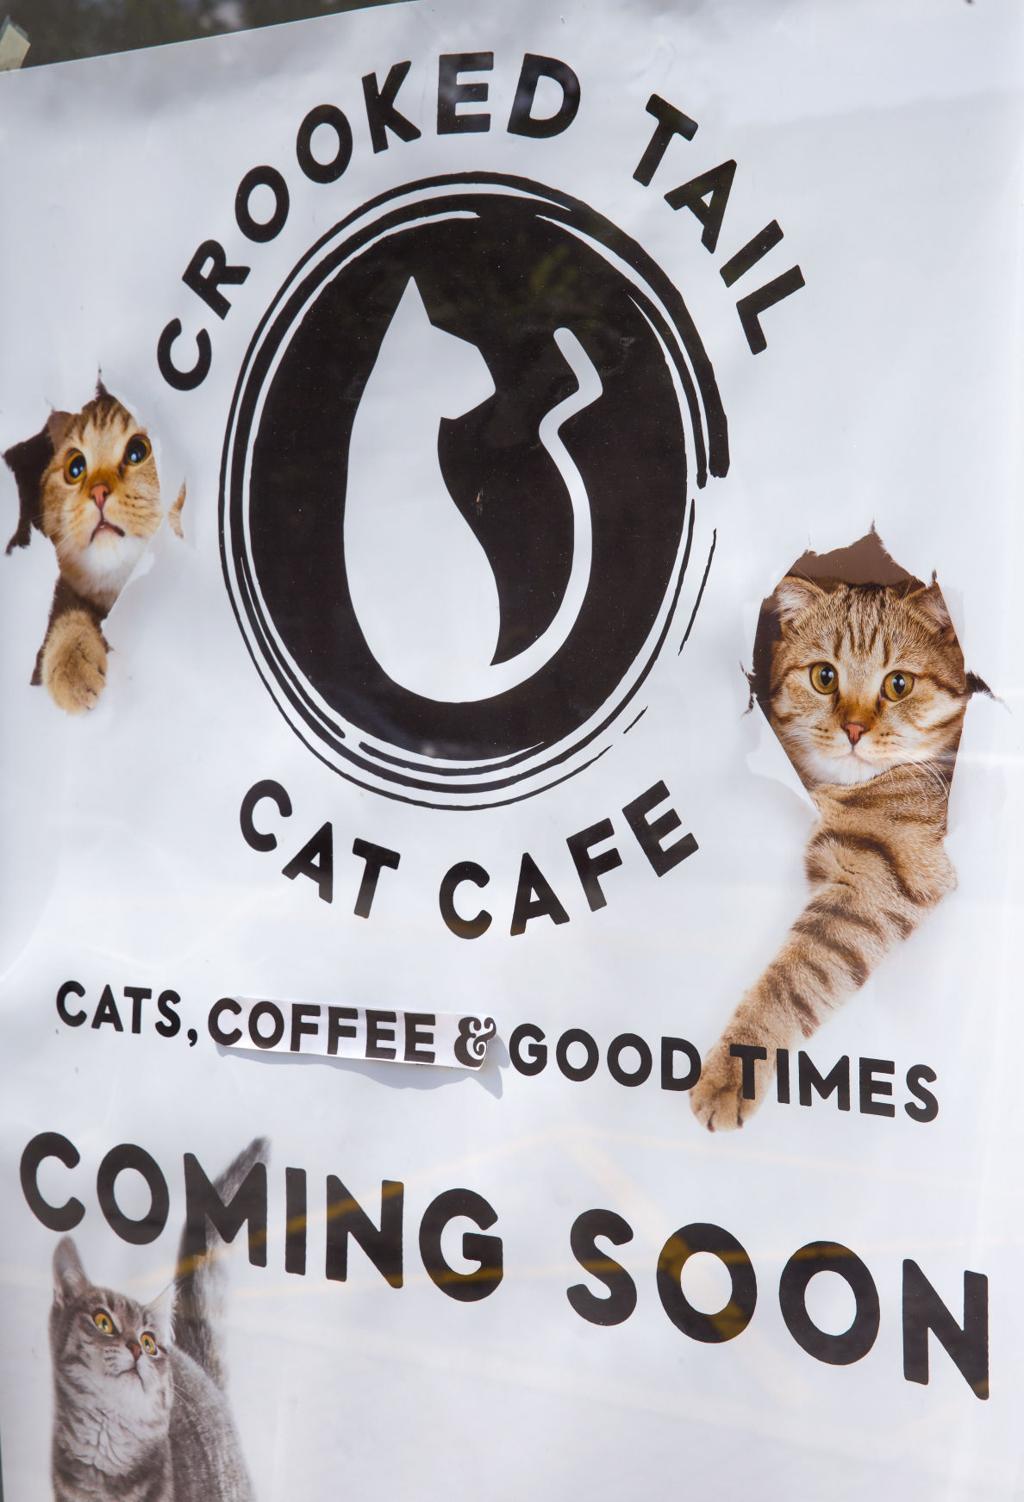  Crooked Tail Cat Cafe Menu 